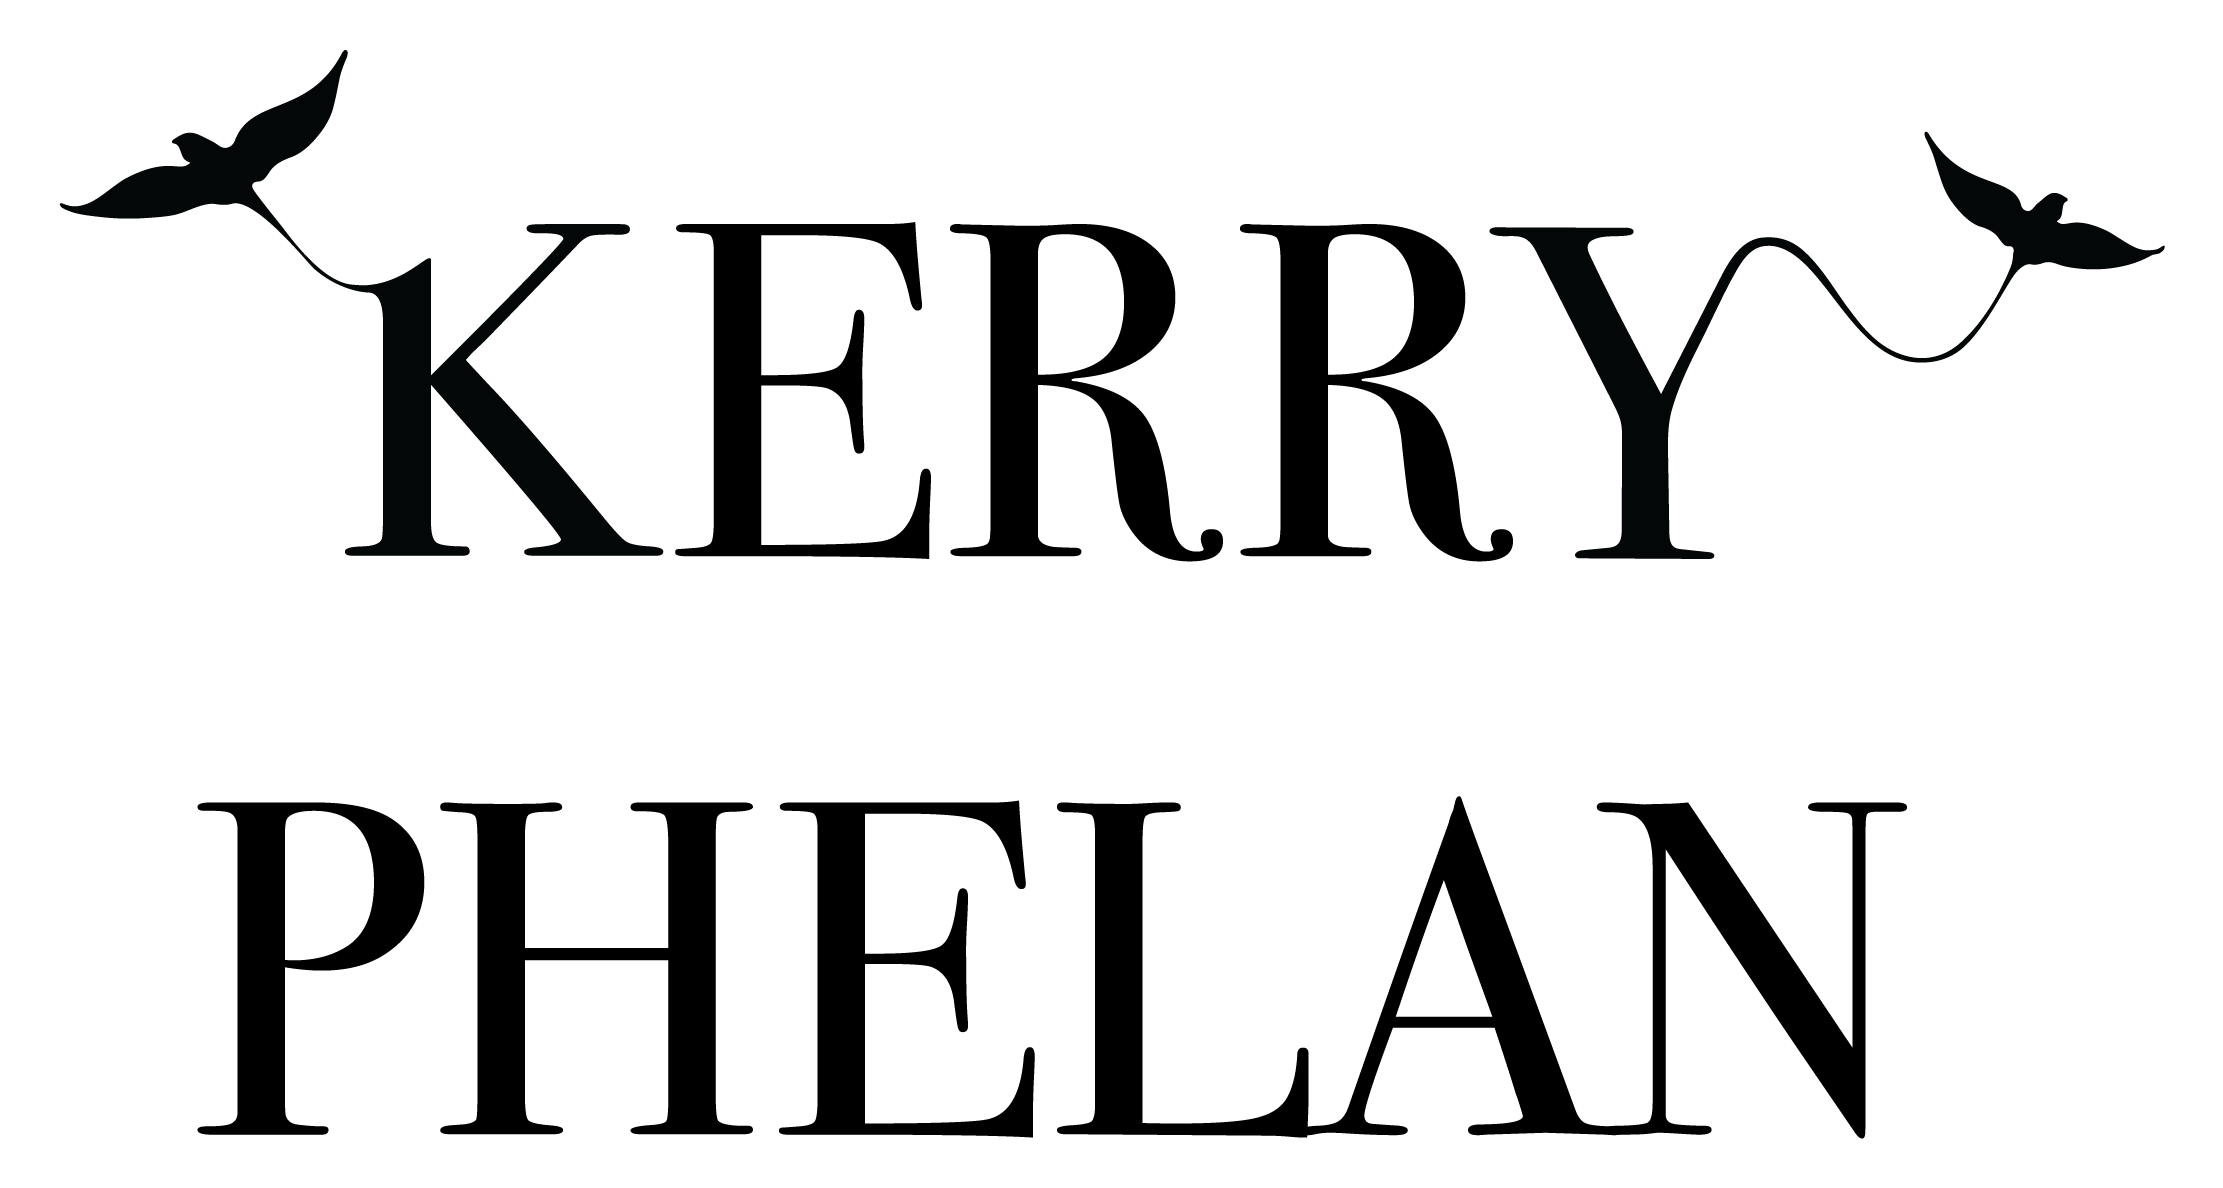 Kerry Phelan